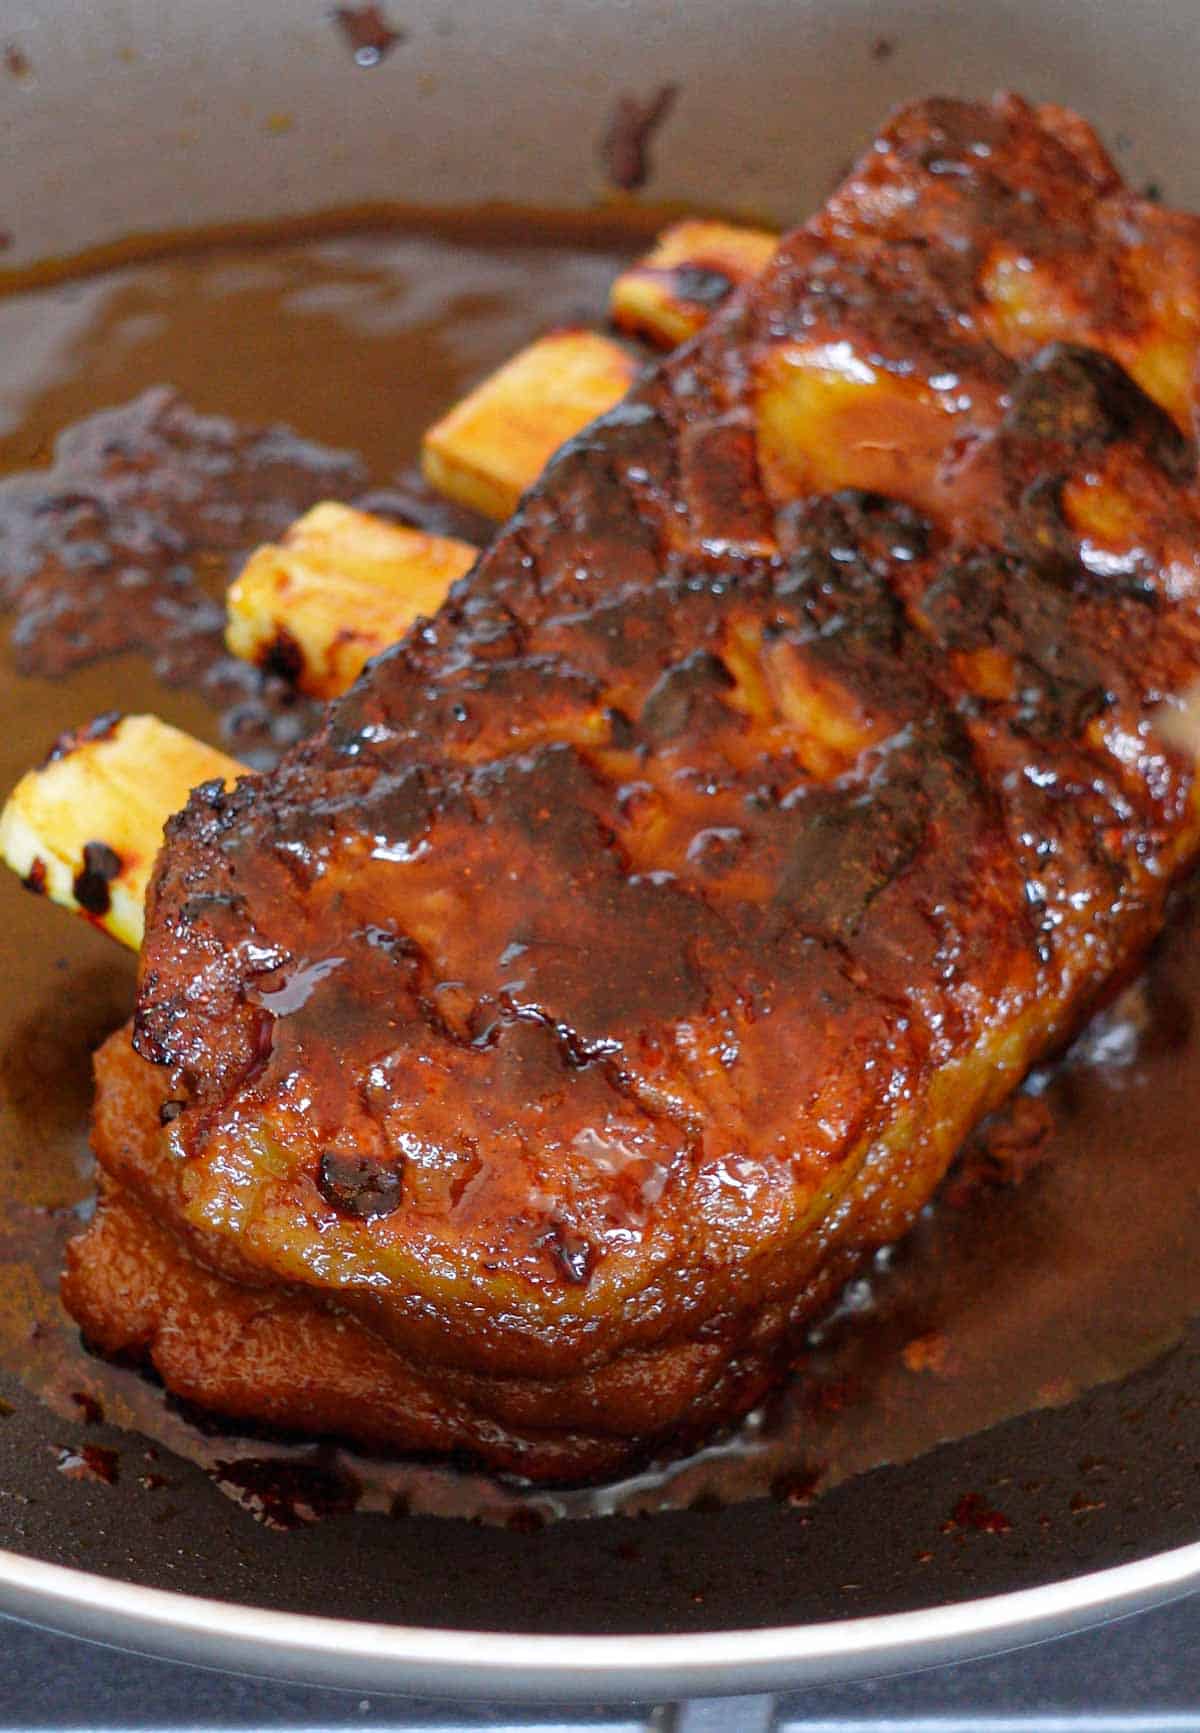 Image: Vegan ribs in a pan